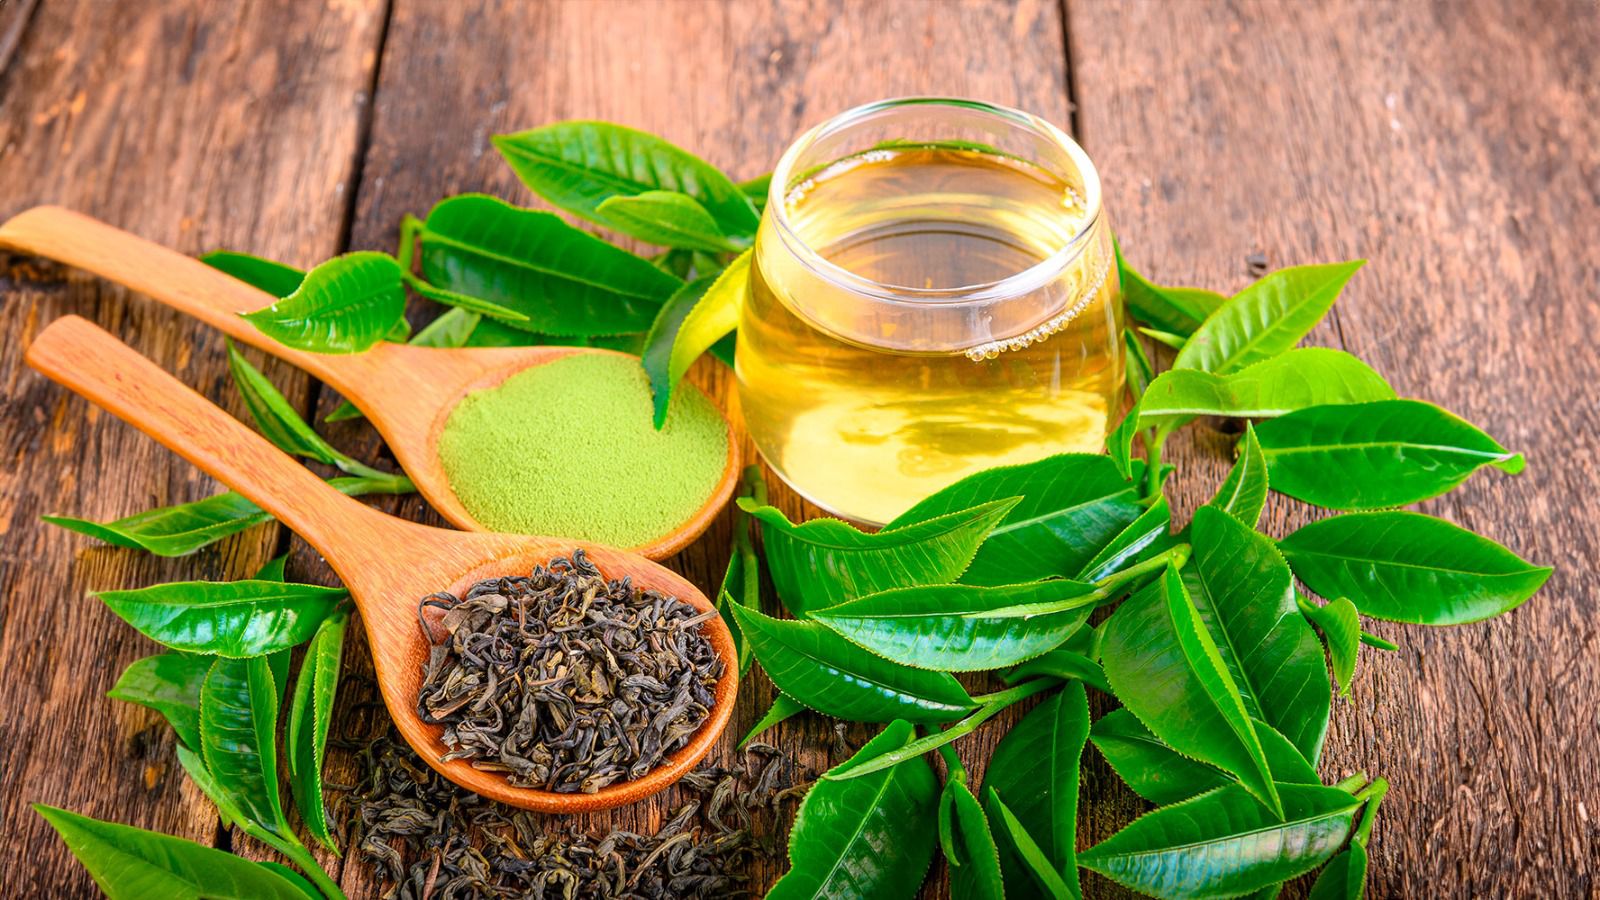 El té verde cuenta con antioxidantes que ofrecen distintos beneficios. (Shutterstock)